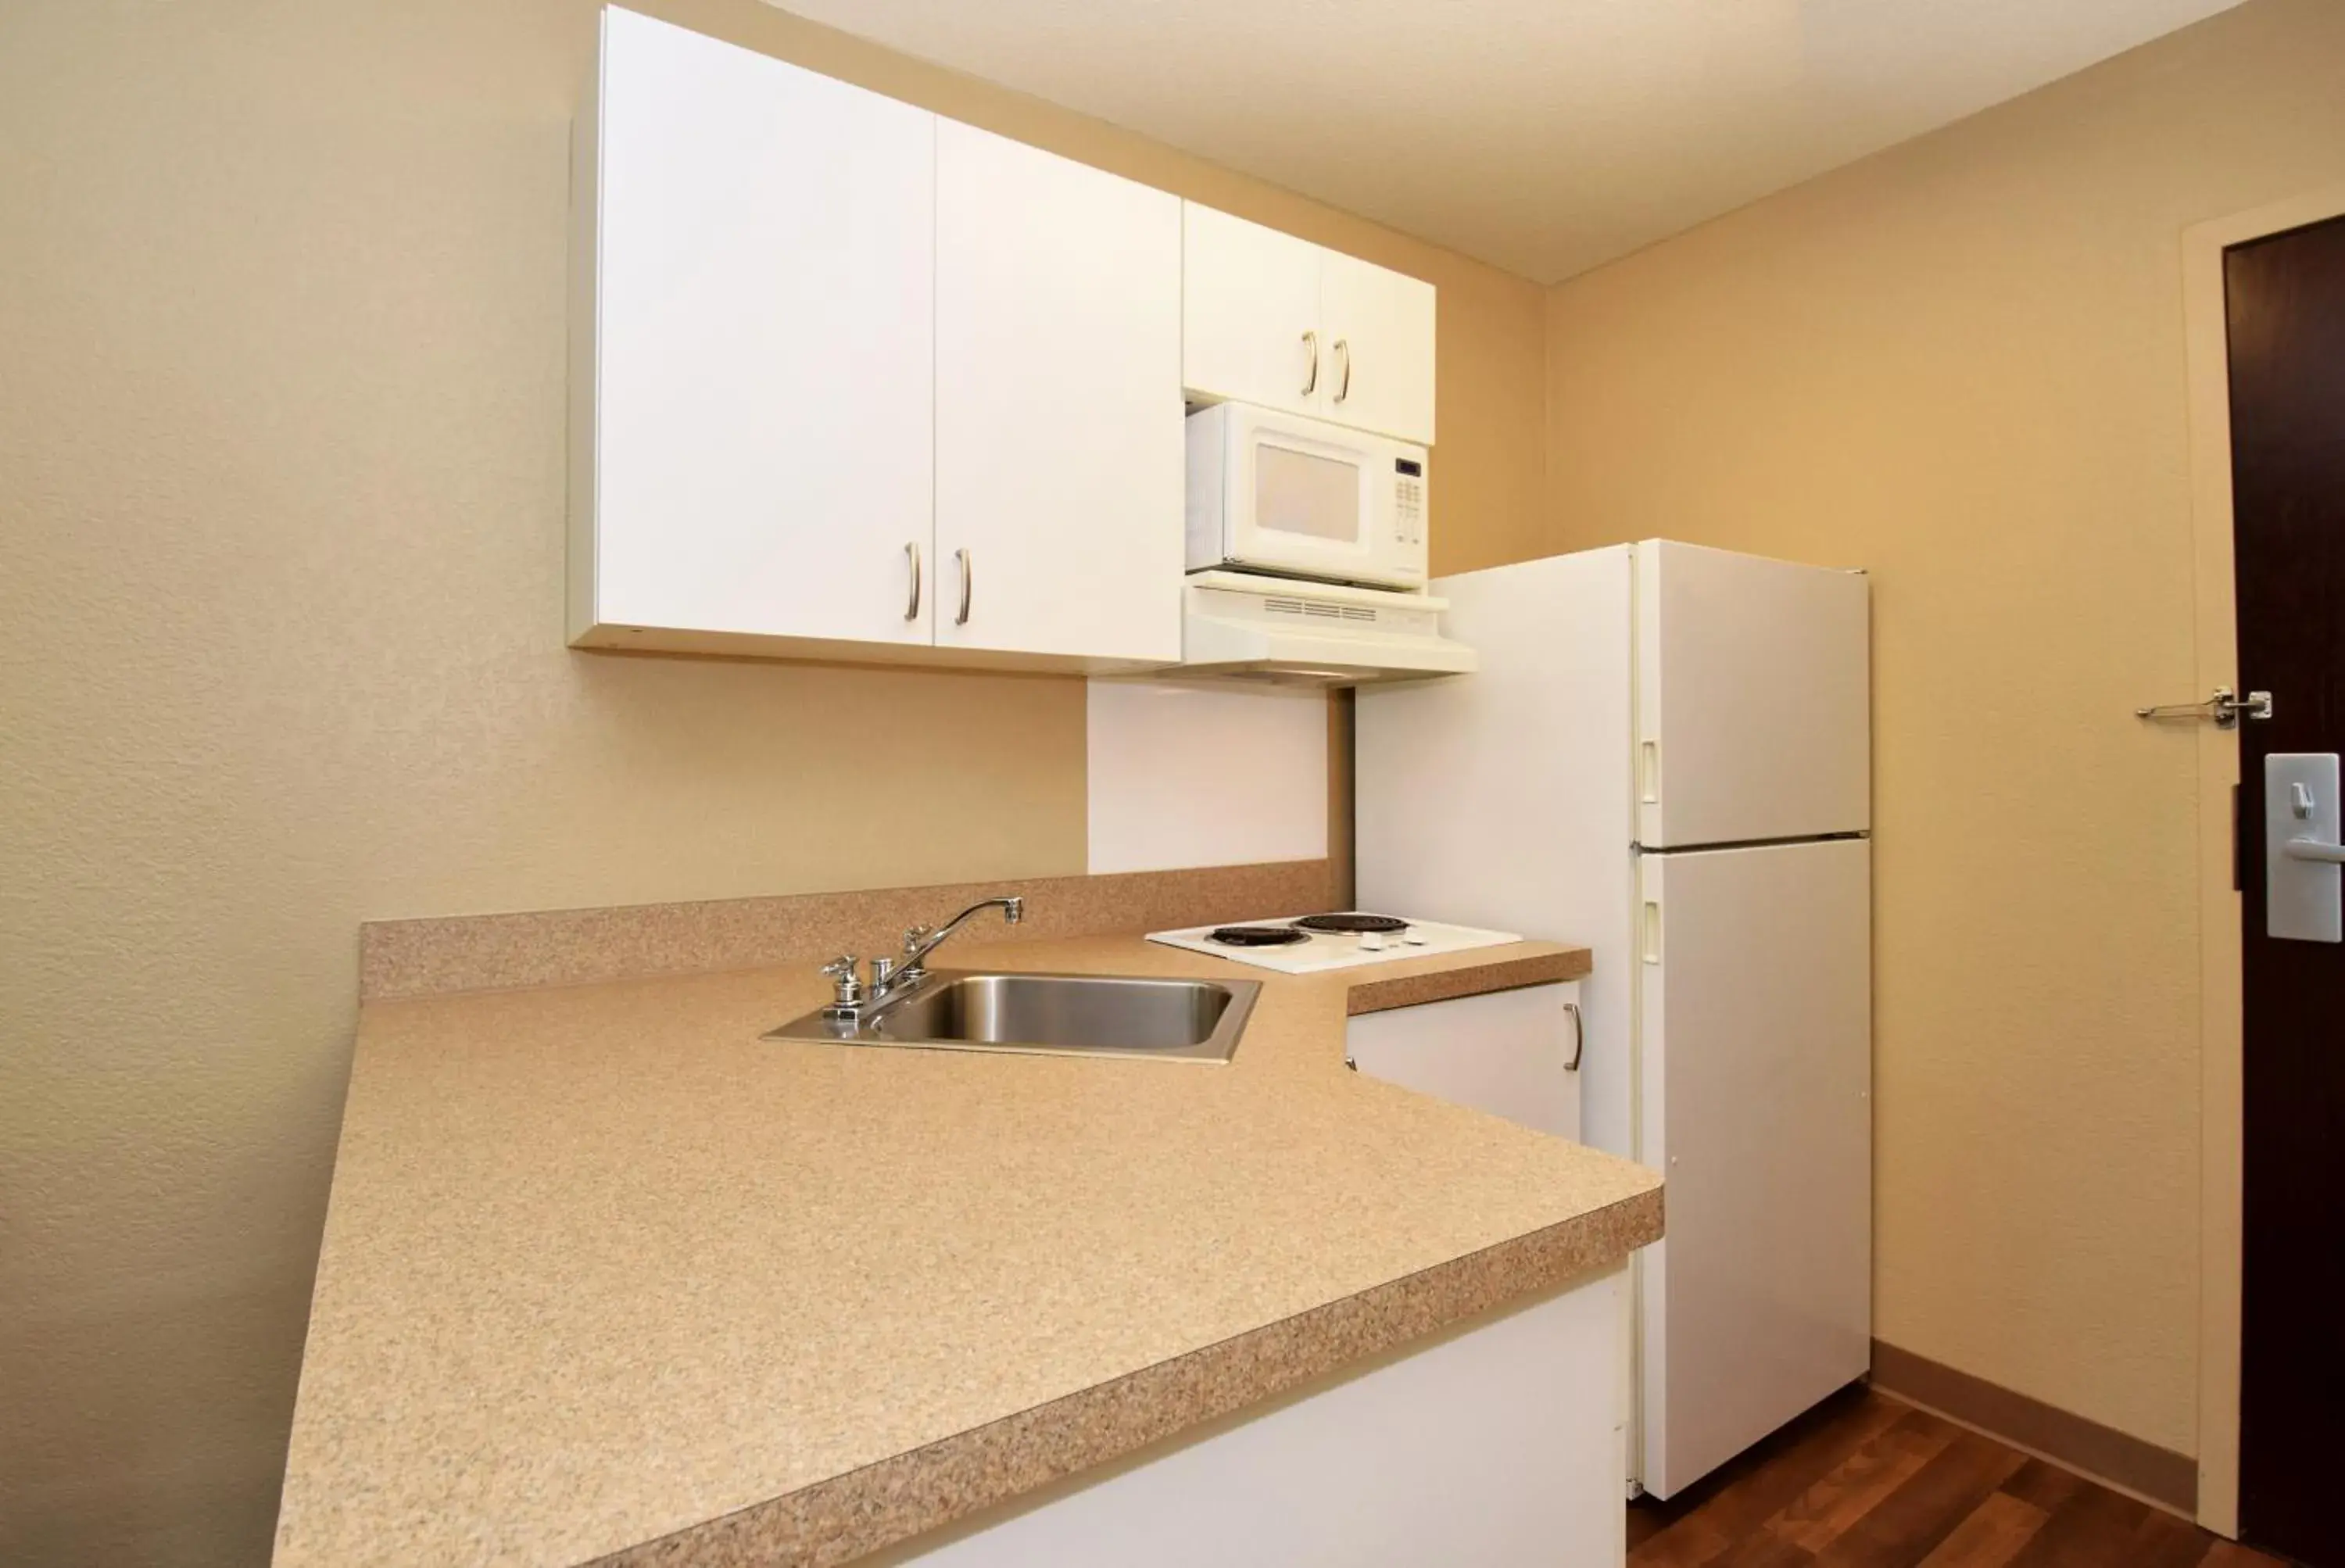 Kitchen or kitchenette, Kitchen/Kitchenette in Extended Stay America Suites - Savannah - Midtown